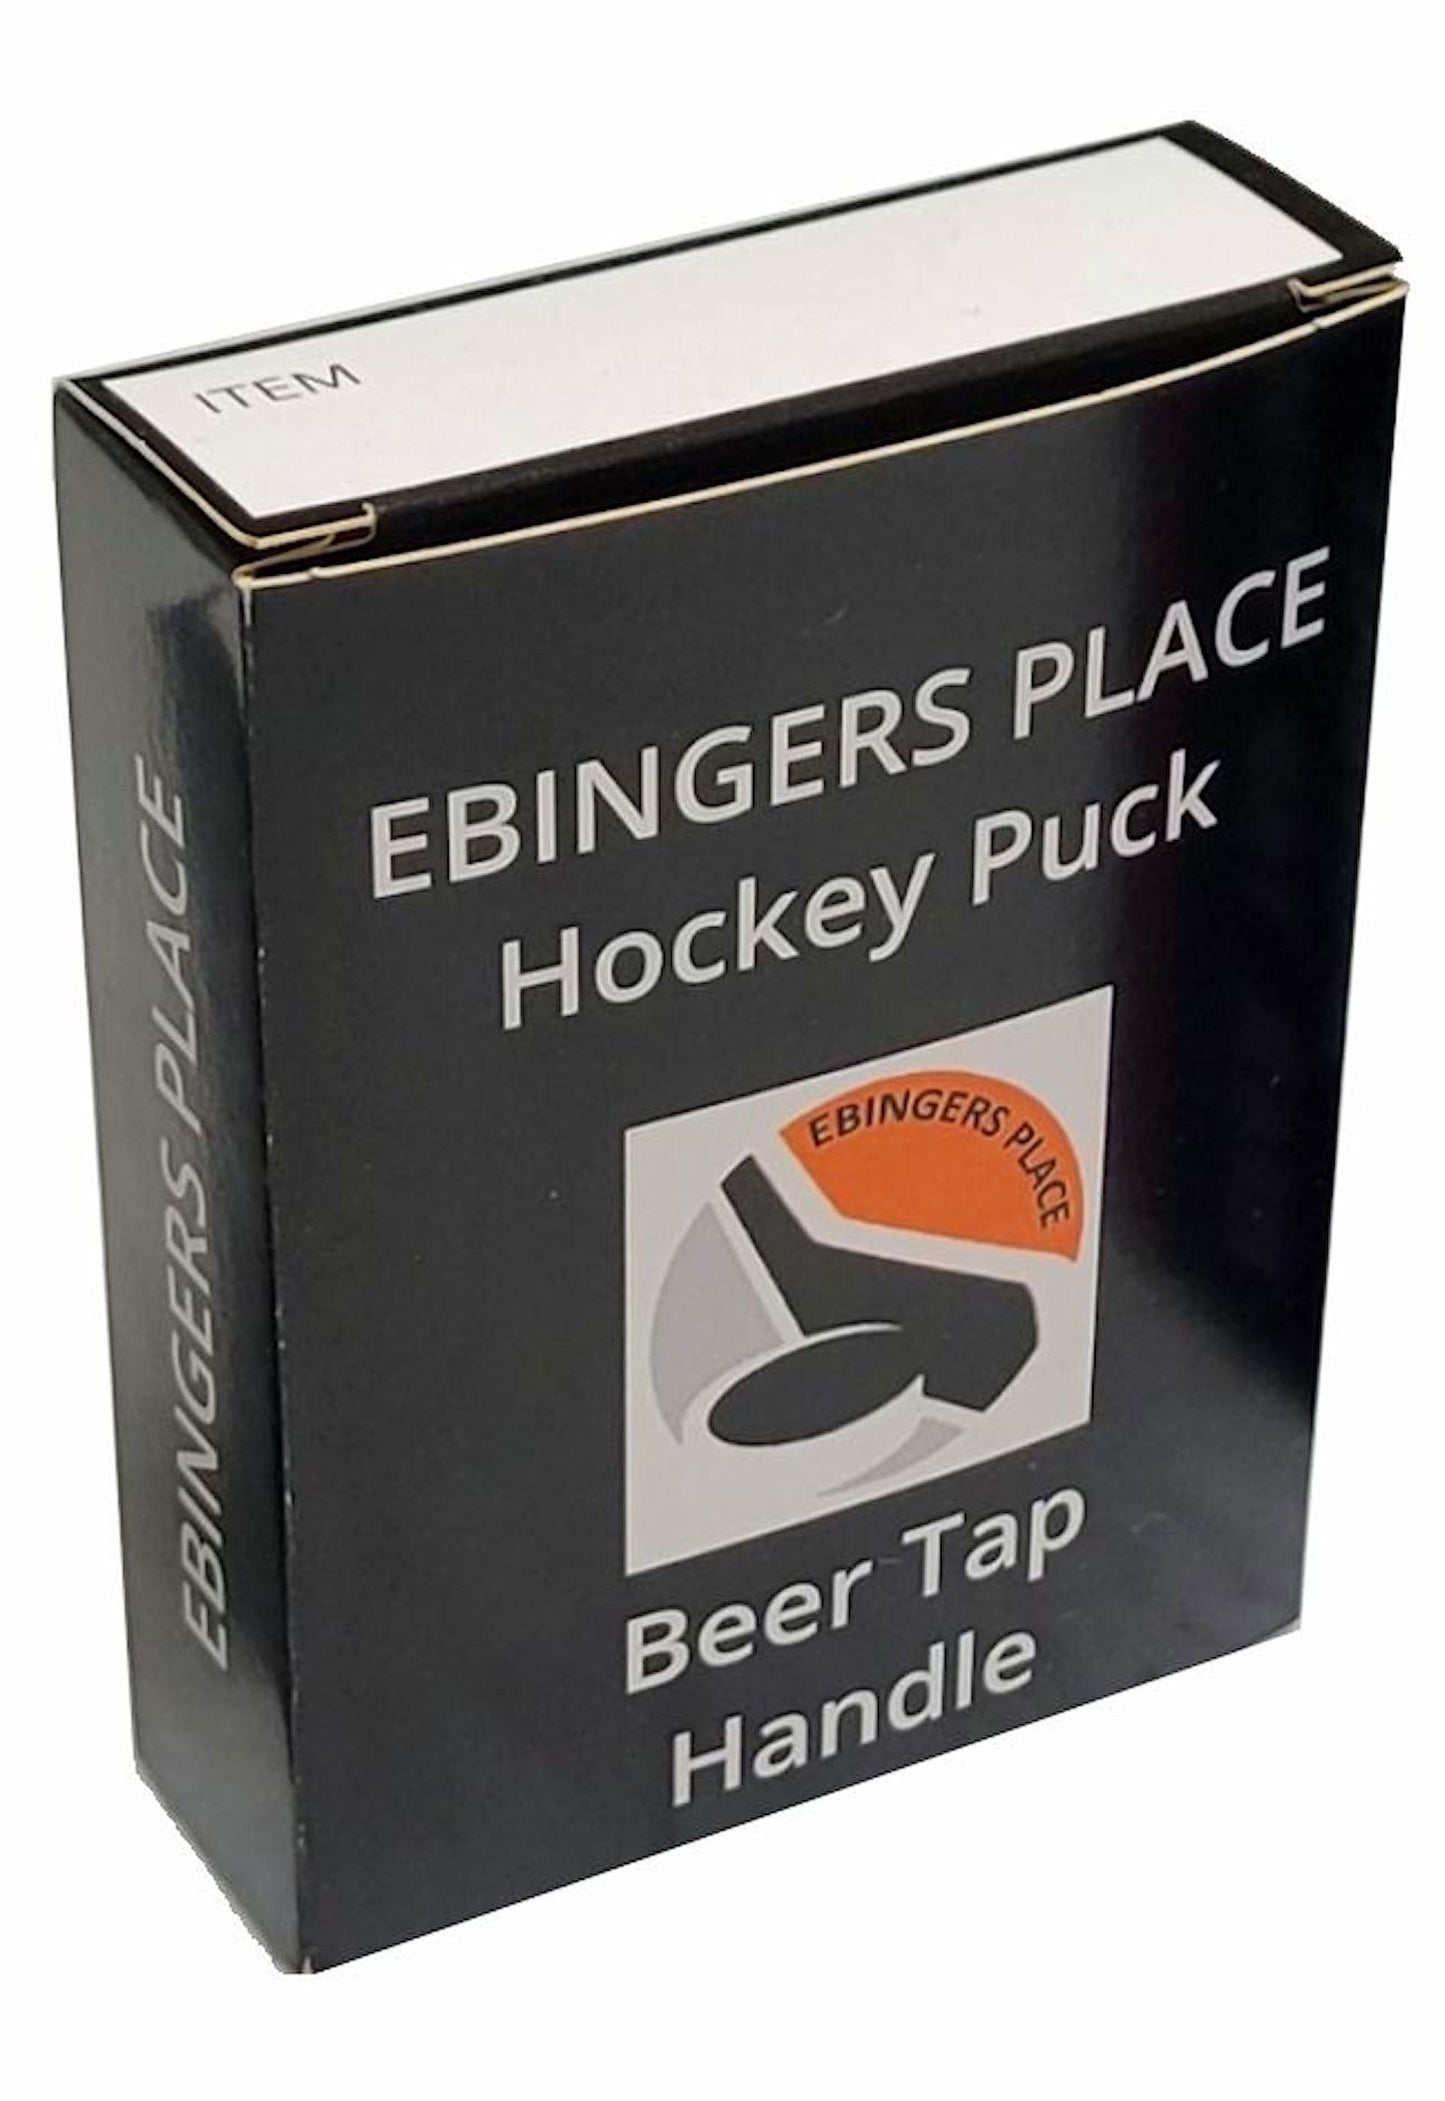 Toronto Maple Leafs Reverse Series Hockey Puck Beer Tap Handle